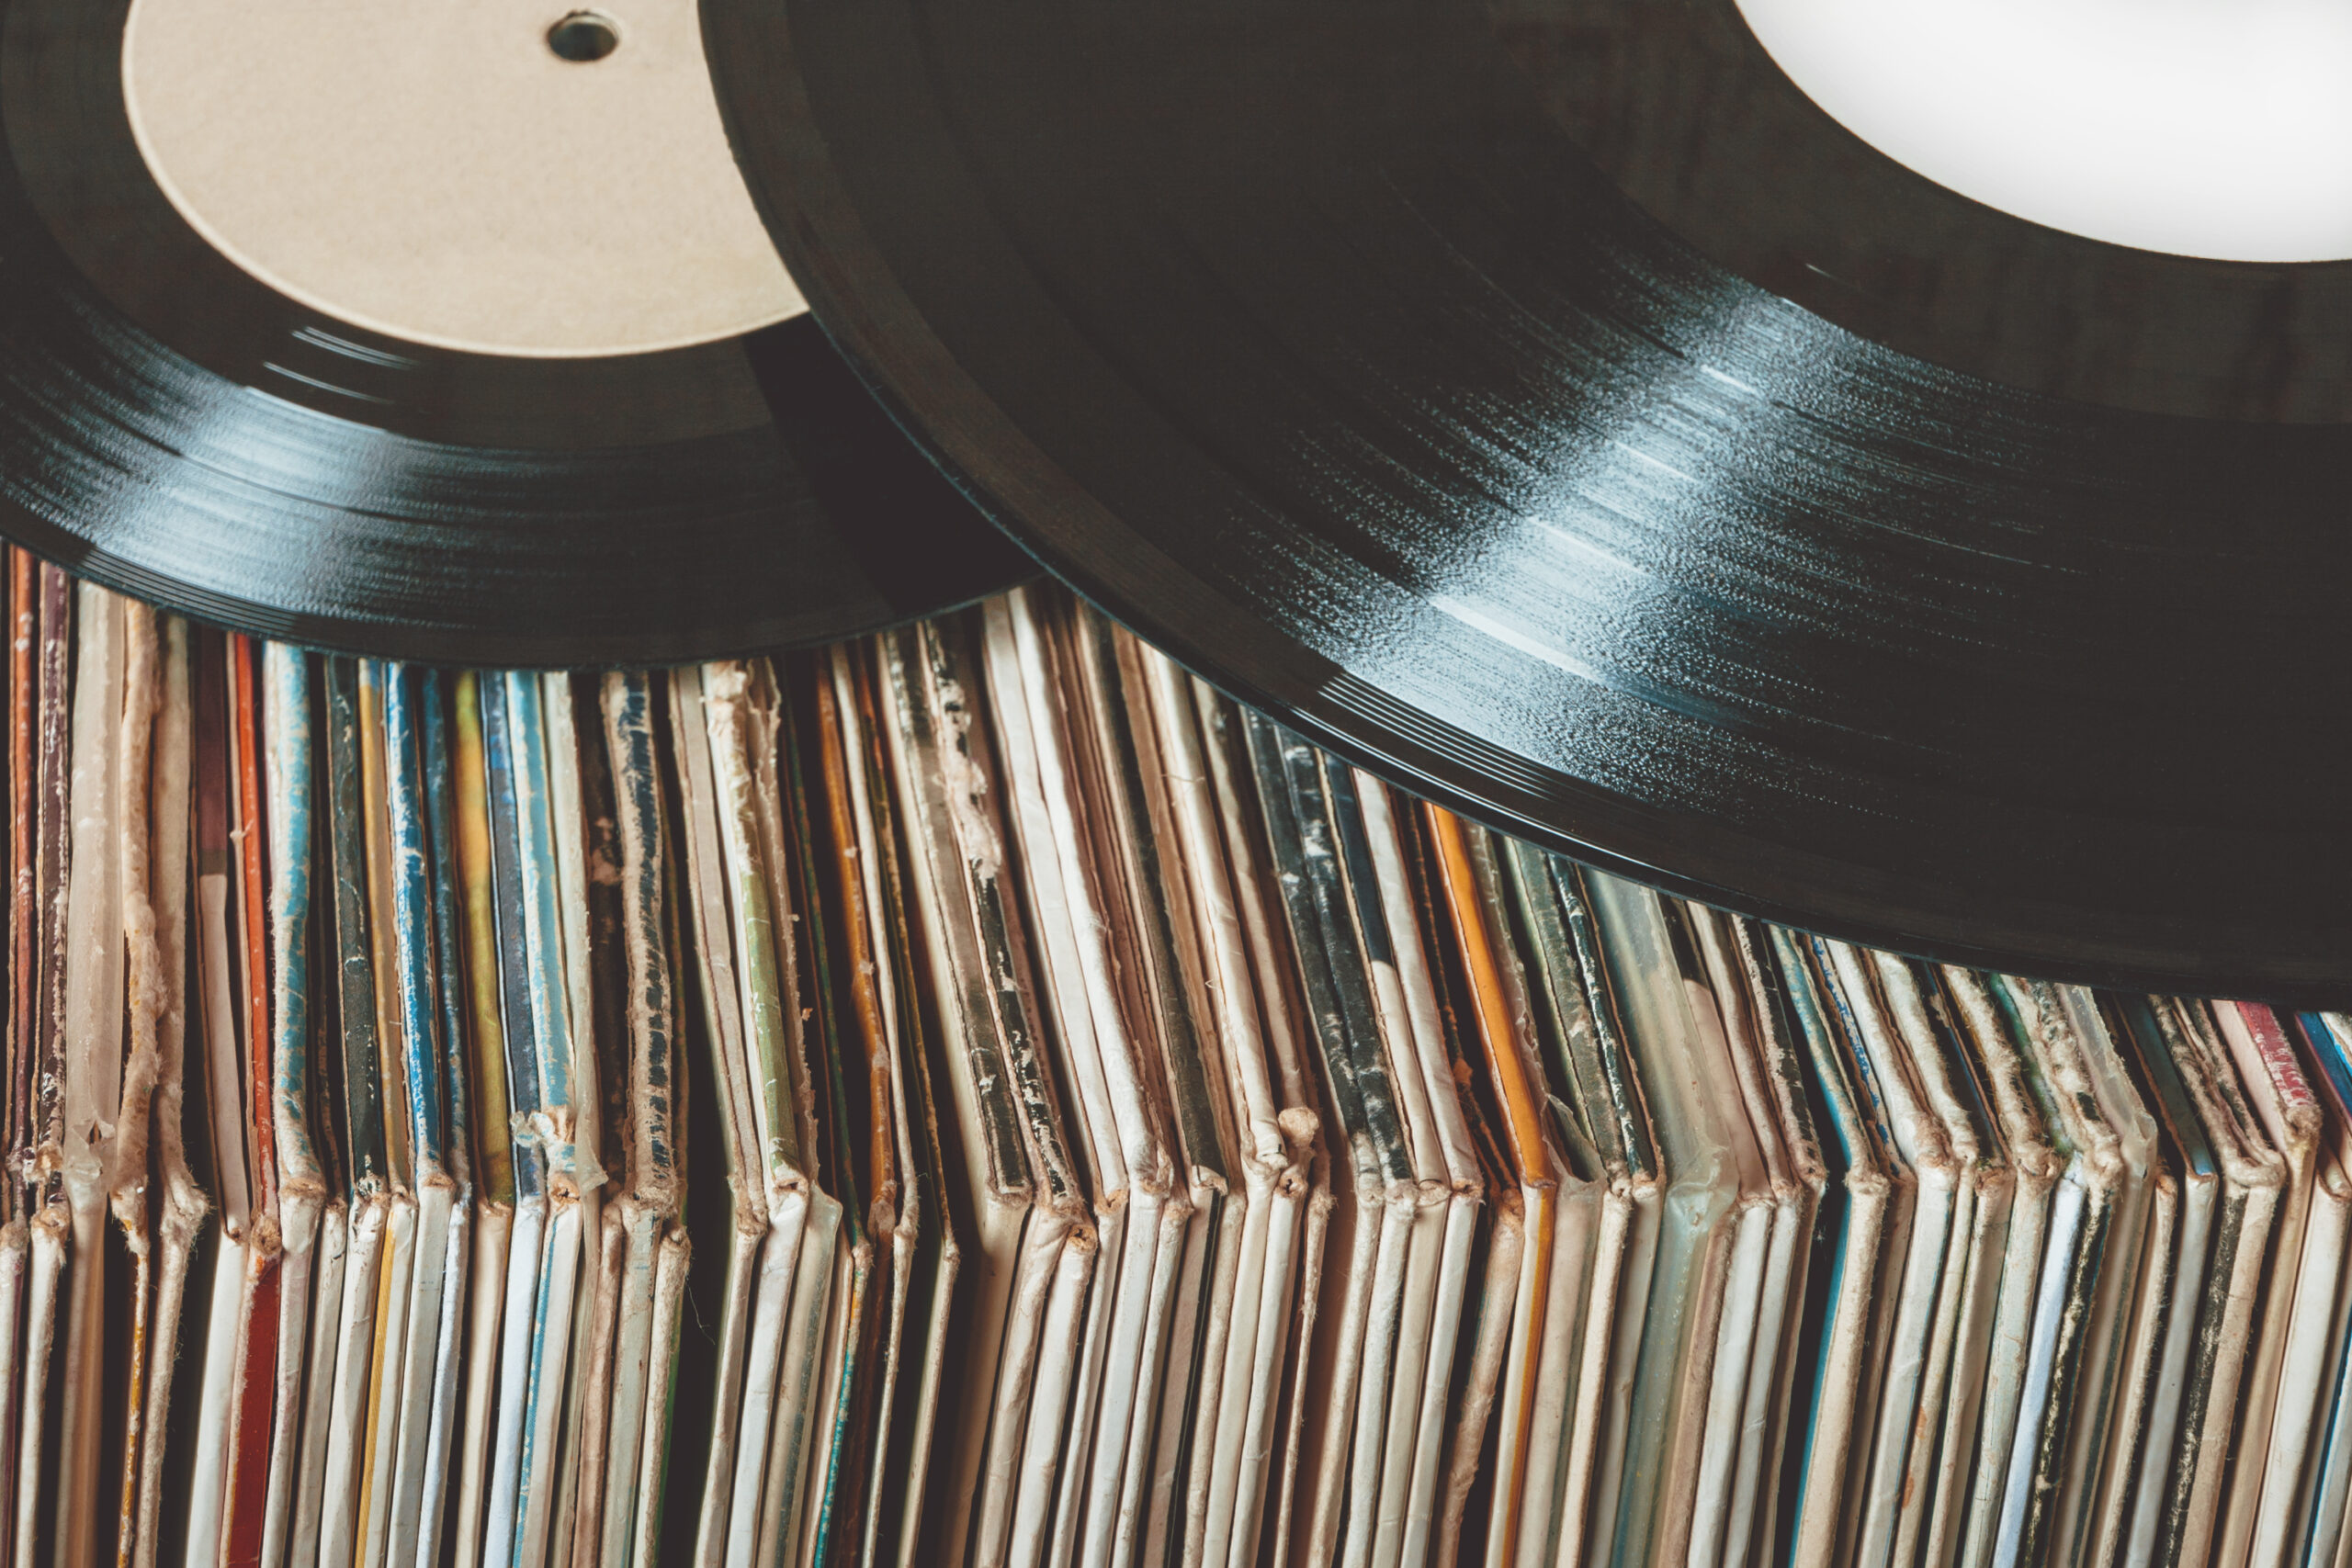 Cuál es el mejor formato para escuchar música? ¿Vinilos, CDs o streaming? 